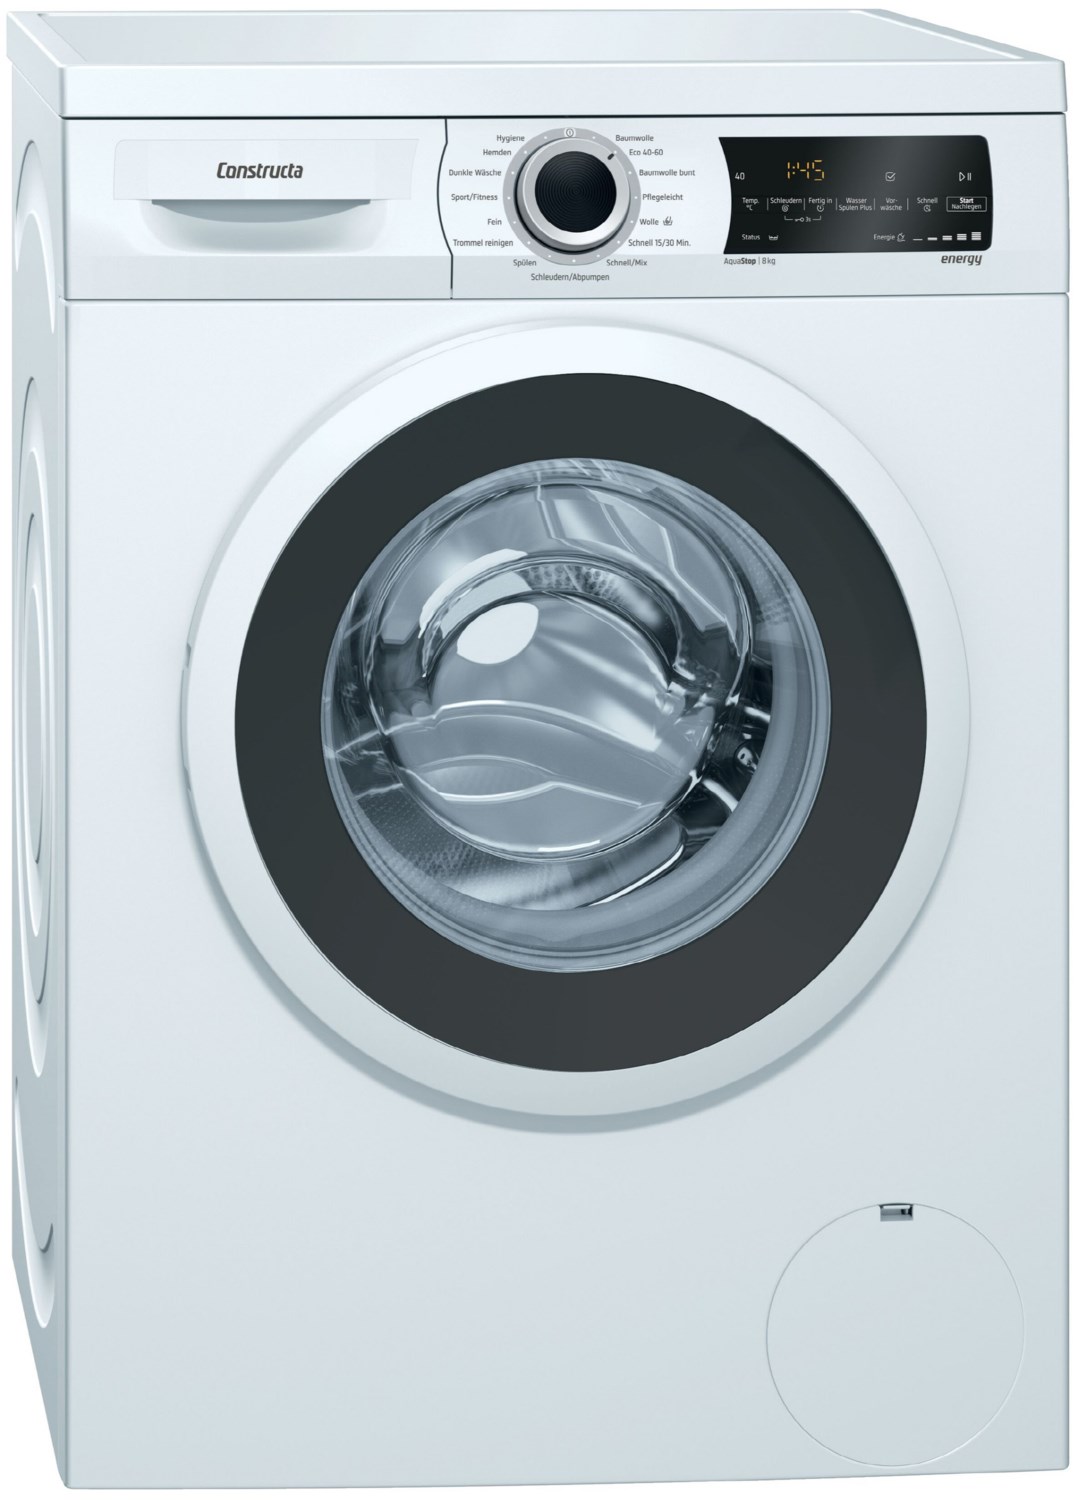 CWF14UT0 Stand-Waschmaschine-Frontlader weiß / C